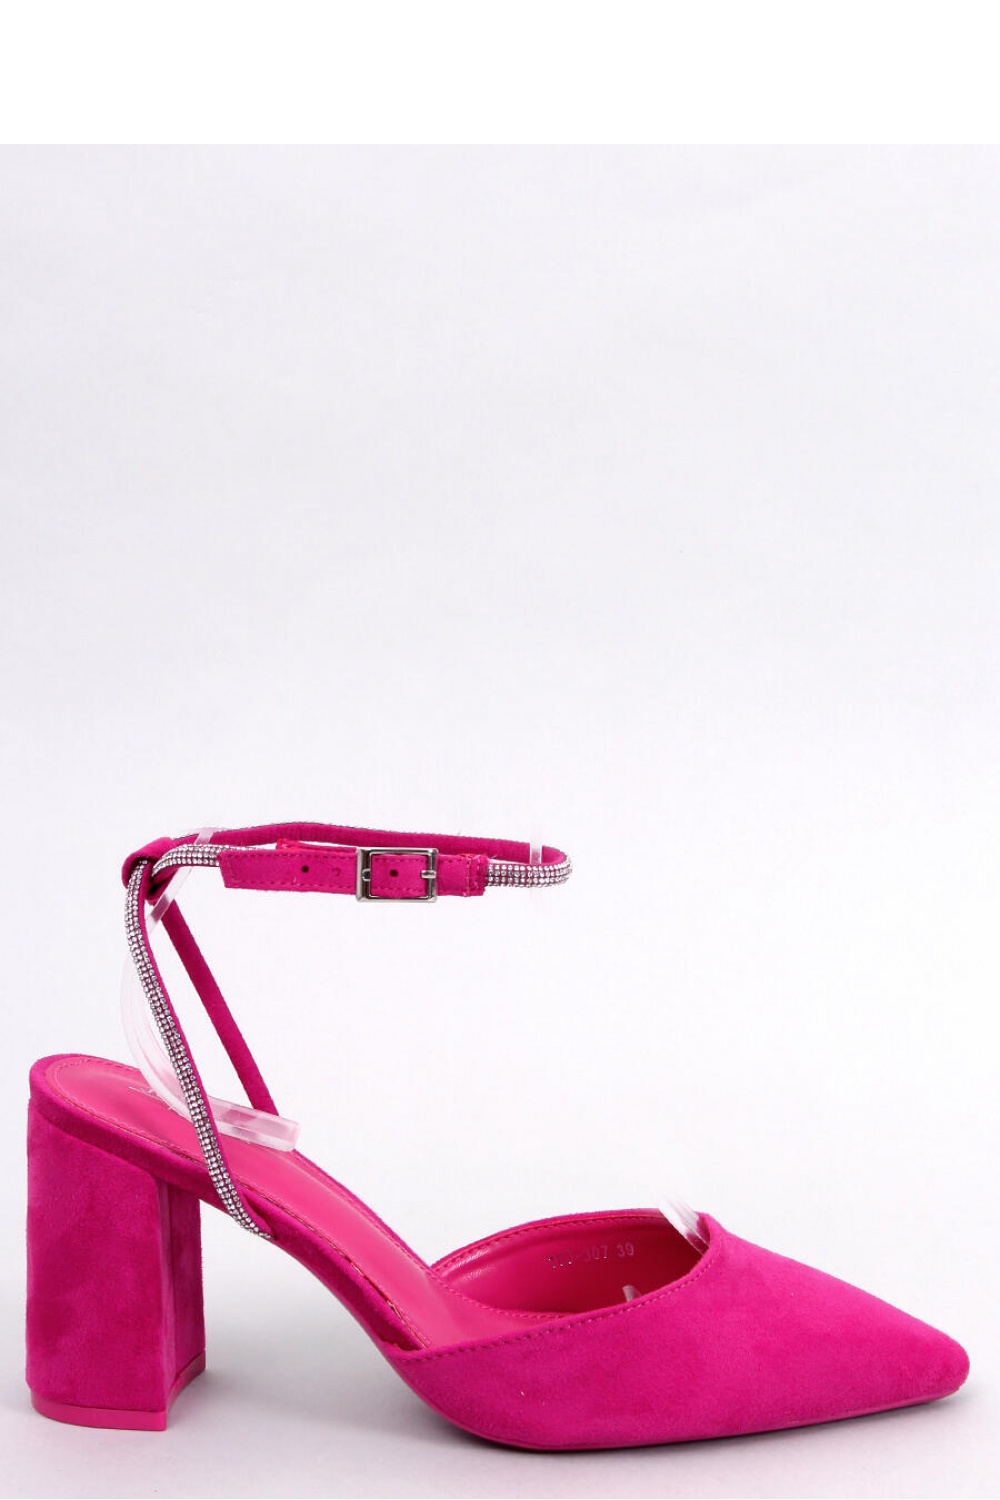  Block heel pumps model 179894 Inello  pink